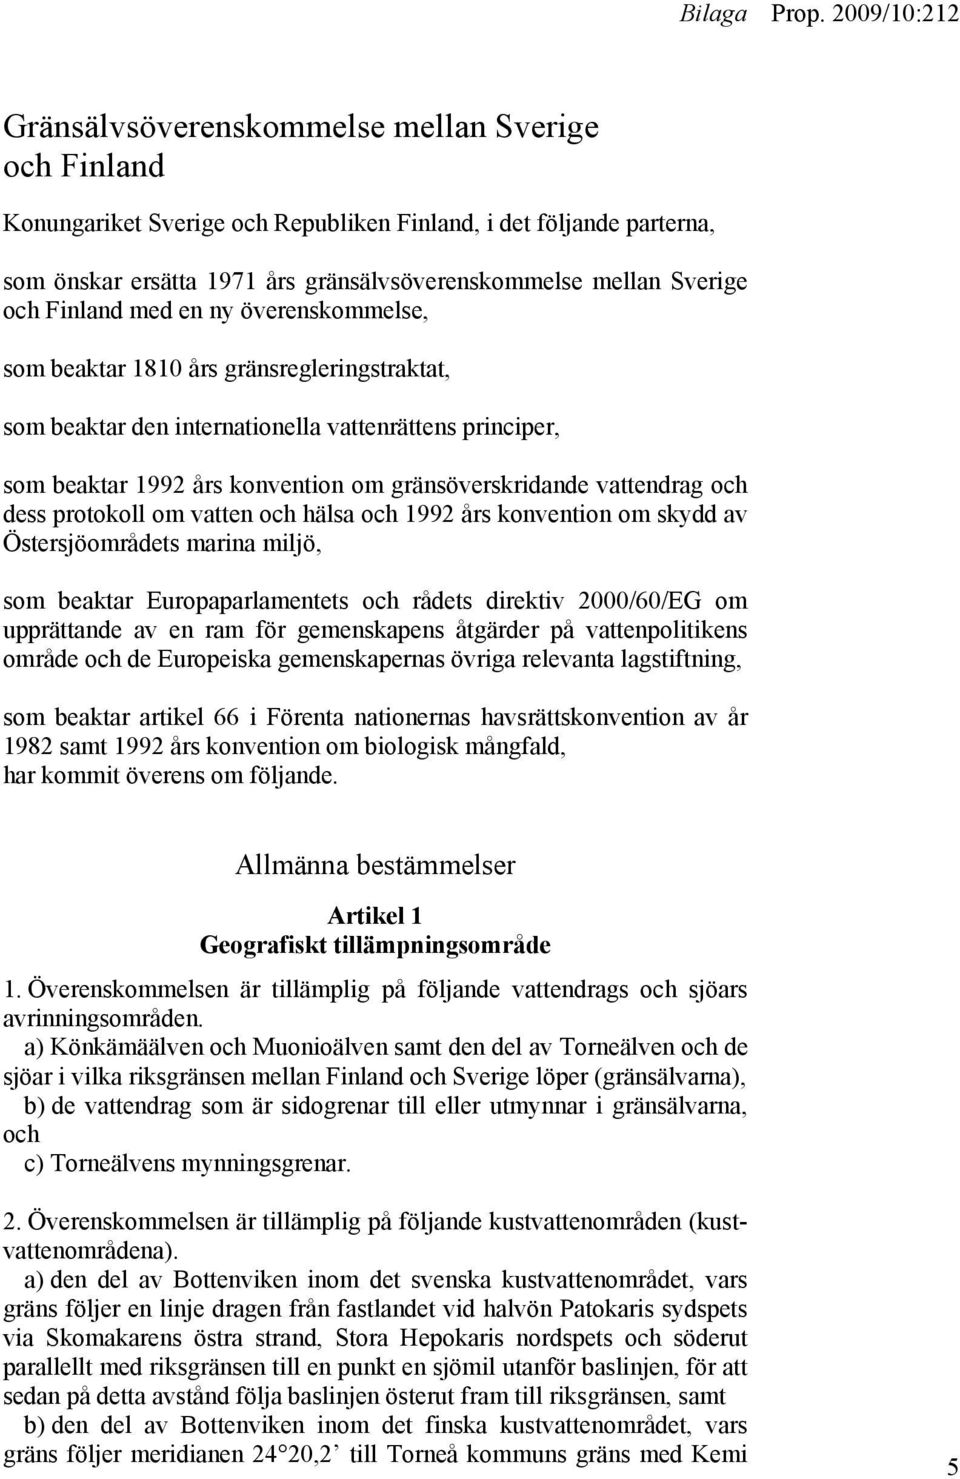 vattendrag och dess protokoll om vatten och hälsa och 1992 års konvention om skydd av Östersjöområdets marina miljö, som beaktar Europaparlamentets och rådets direktiv 2000/60/EG om upprättande av en